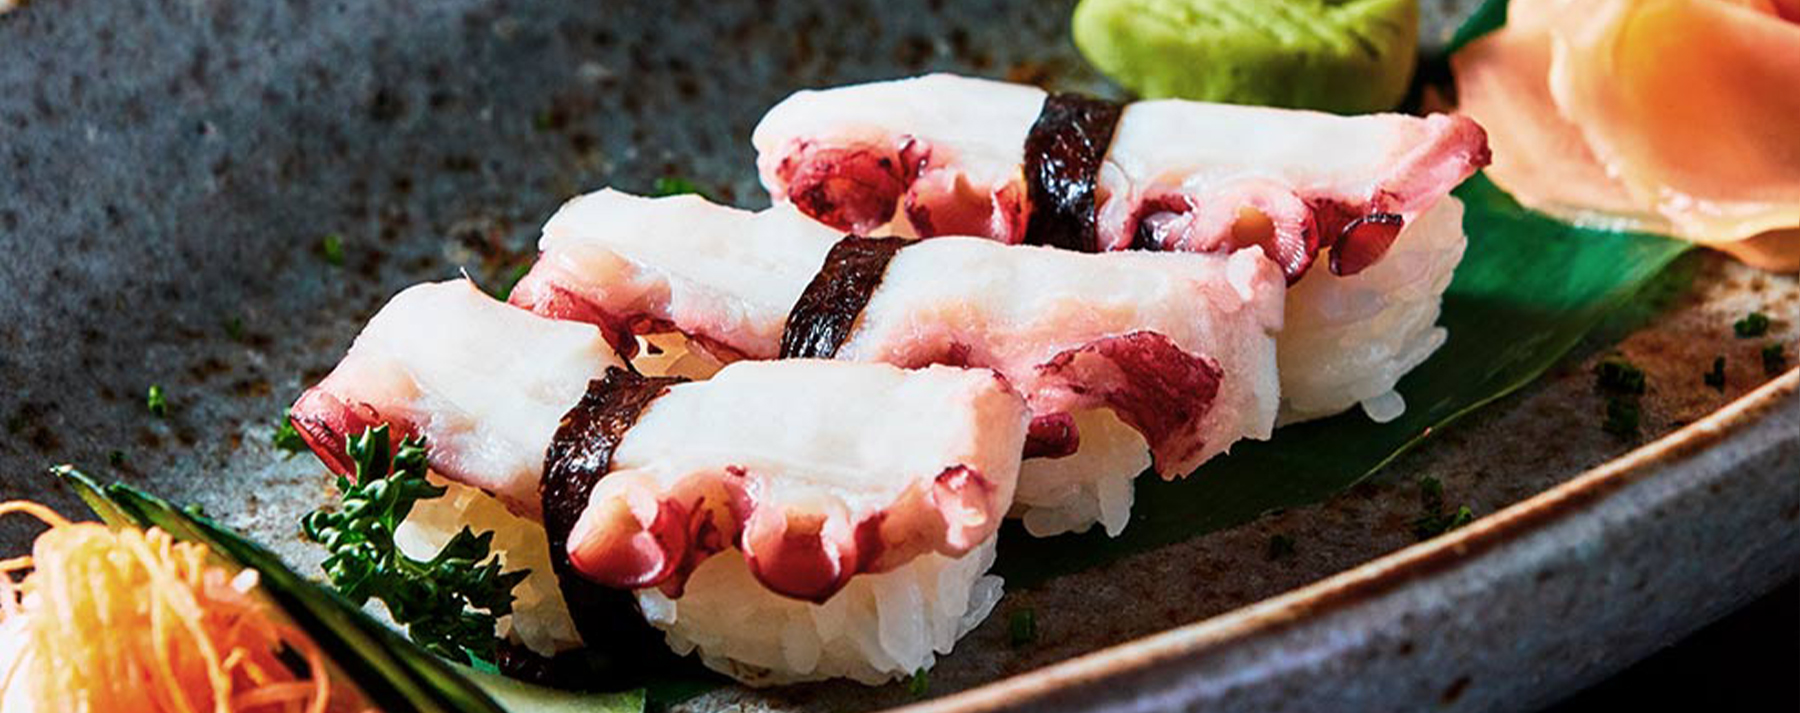 Sushi Nigiri de Pulpo, receta tradicional japonesa - el Rey del Pulpo